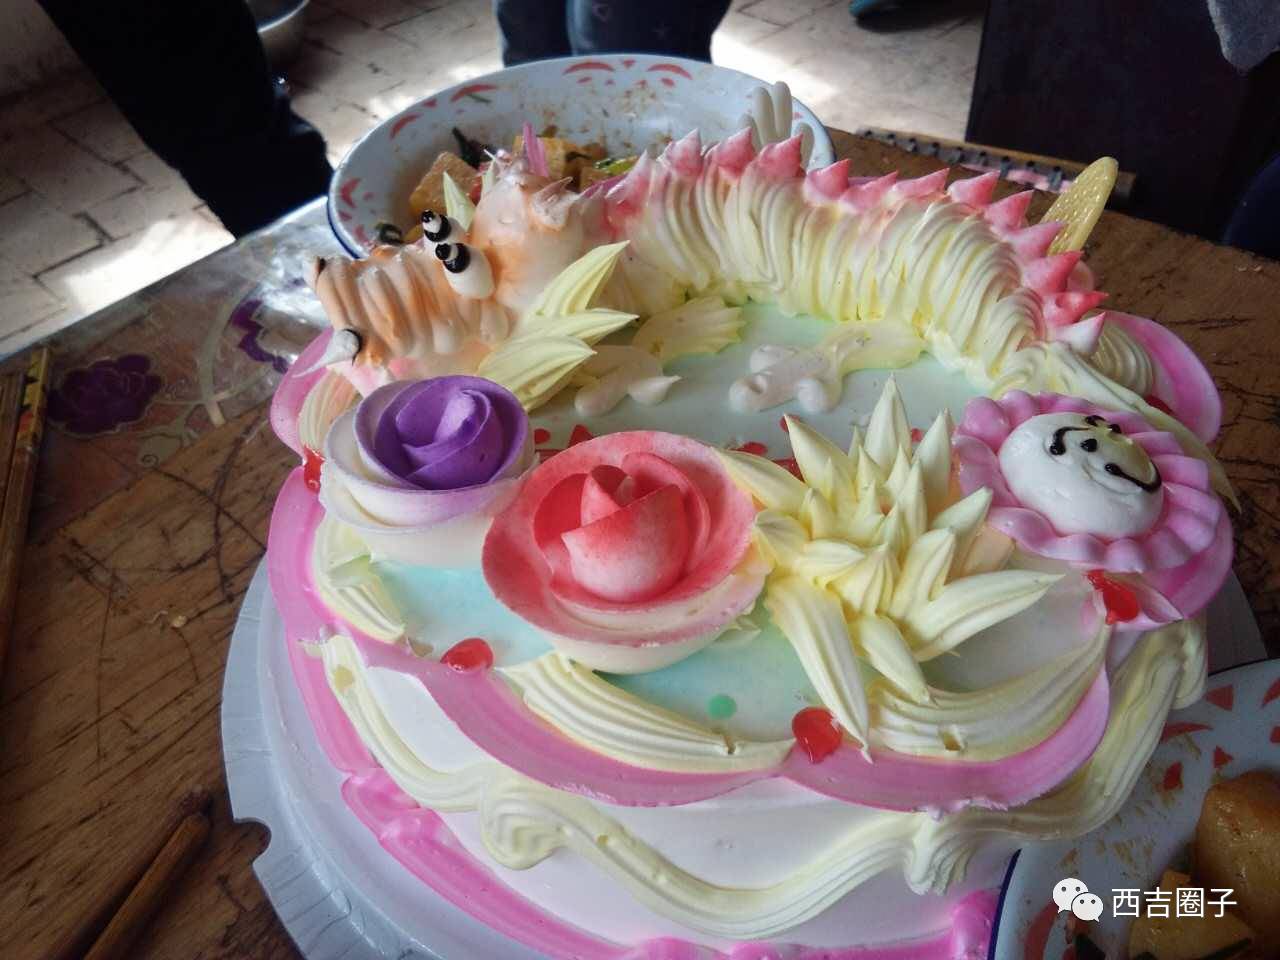 投稿丨今天是老妈生辰,网友亲自做蛋糕美食给老妈过生日,祝老妈生日